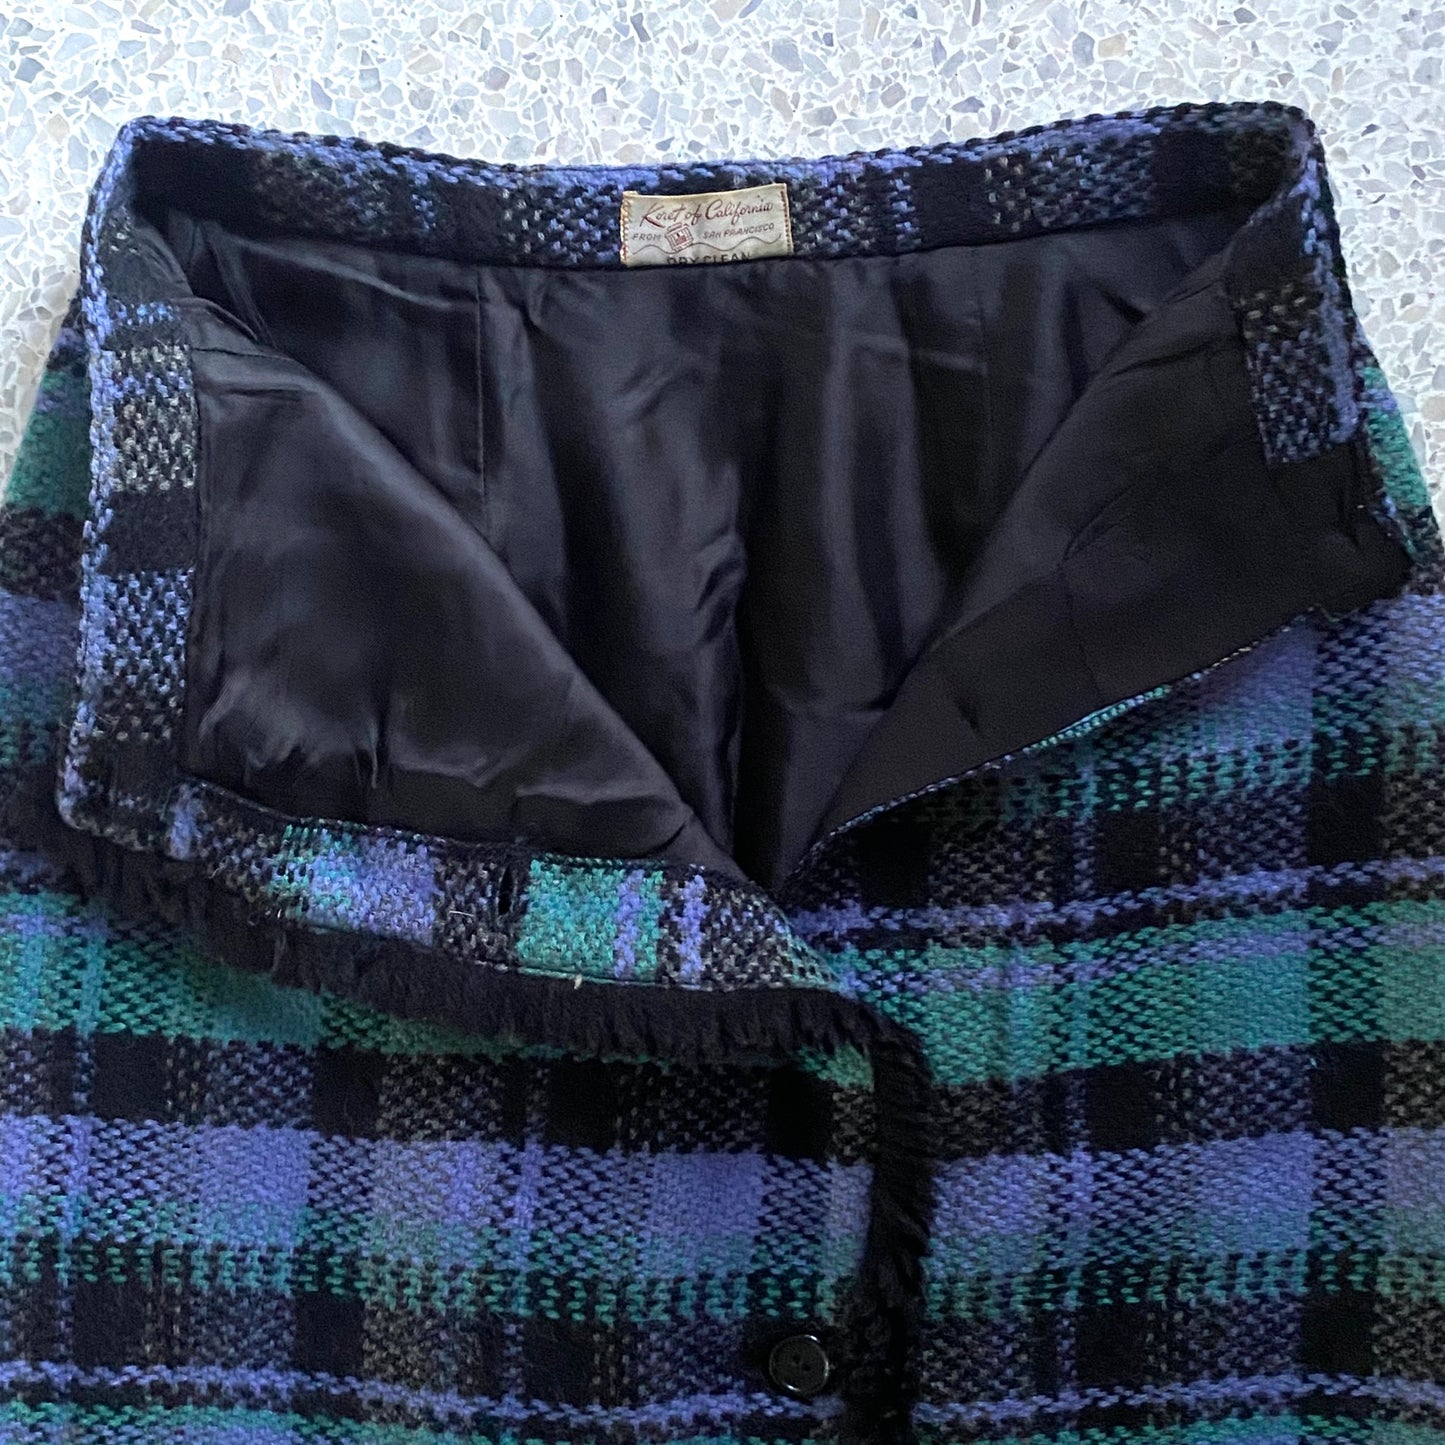 Late 40s/ Early 50s Koret of California Skirt